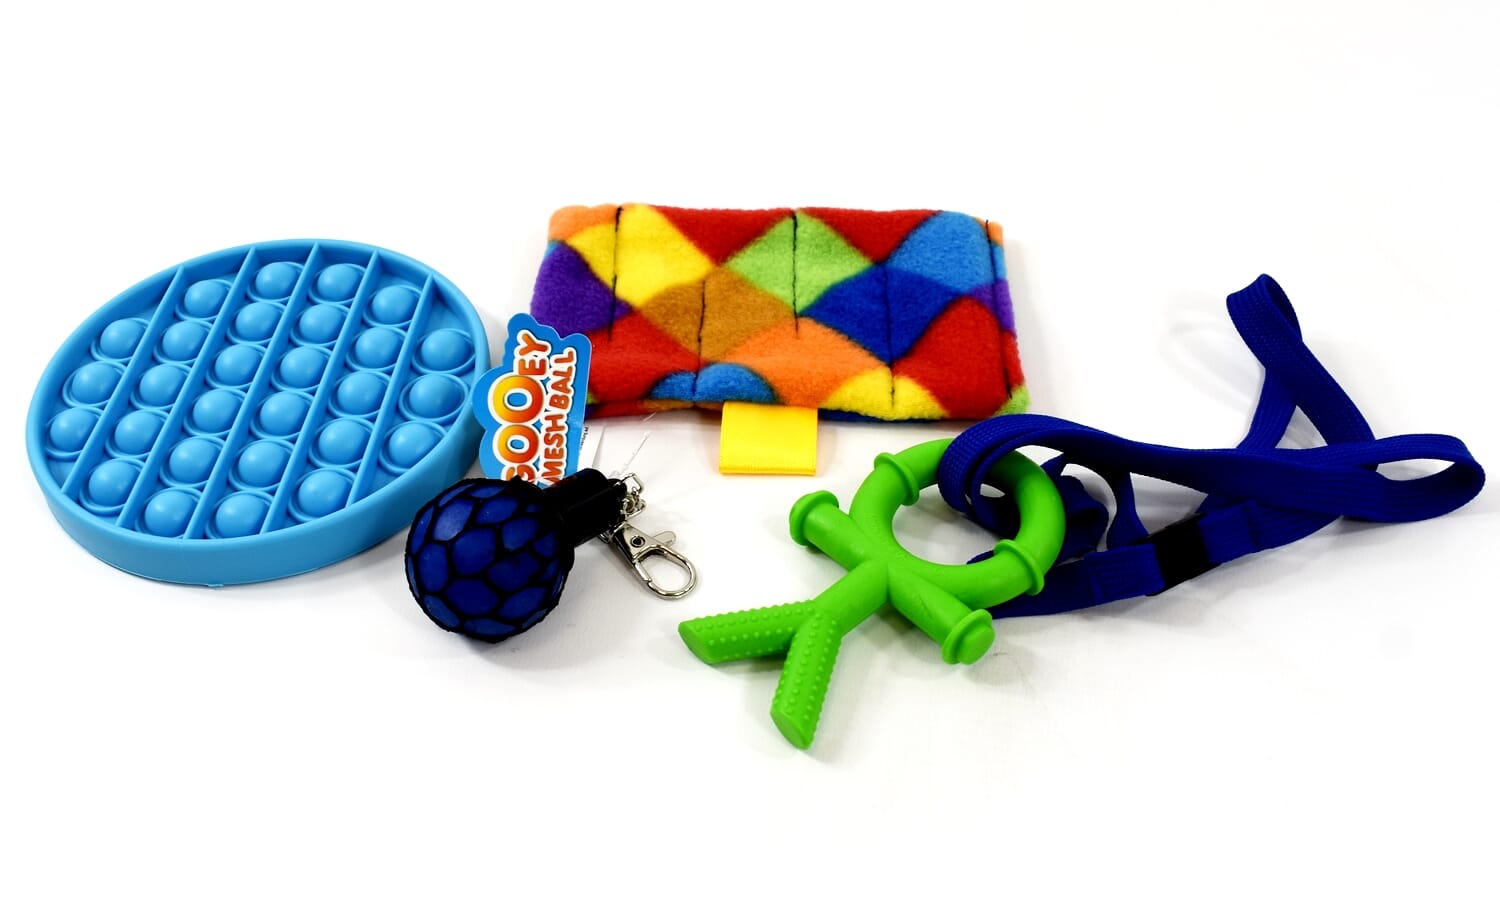 Details about   The Original Fidd'L Sticks fidget toy 36 count bulk ADD autism therapy 